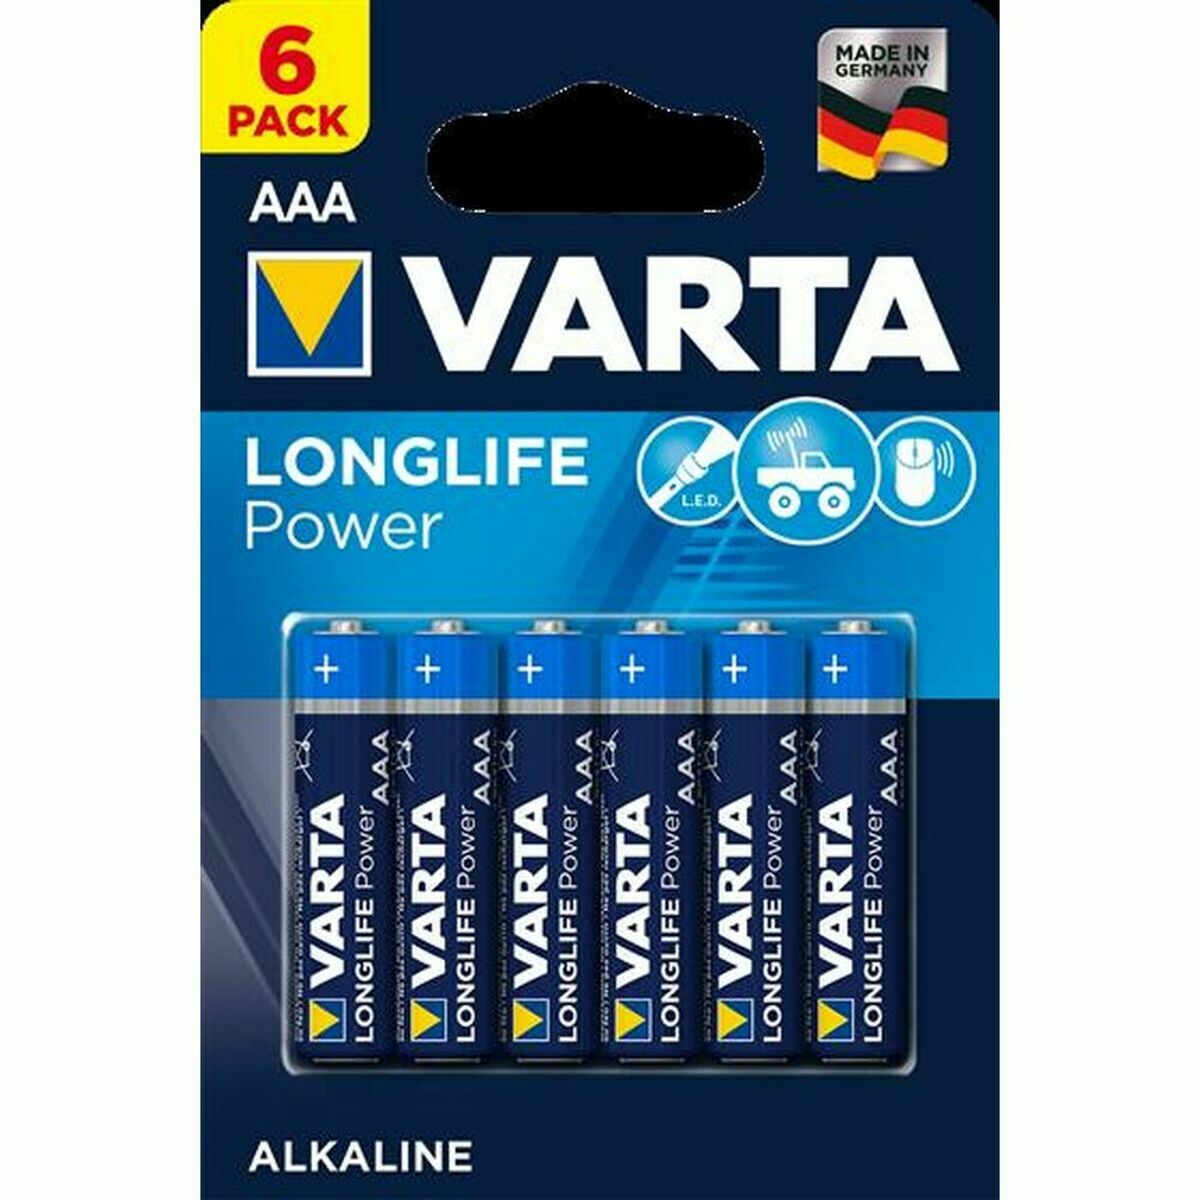 Batteria Alcalina Varta Longlife Power 1,5 V AAA High Energy 1,5 V 1.5 V AAA  